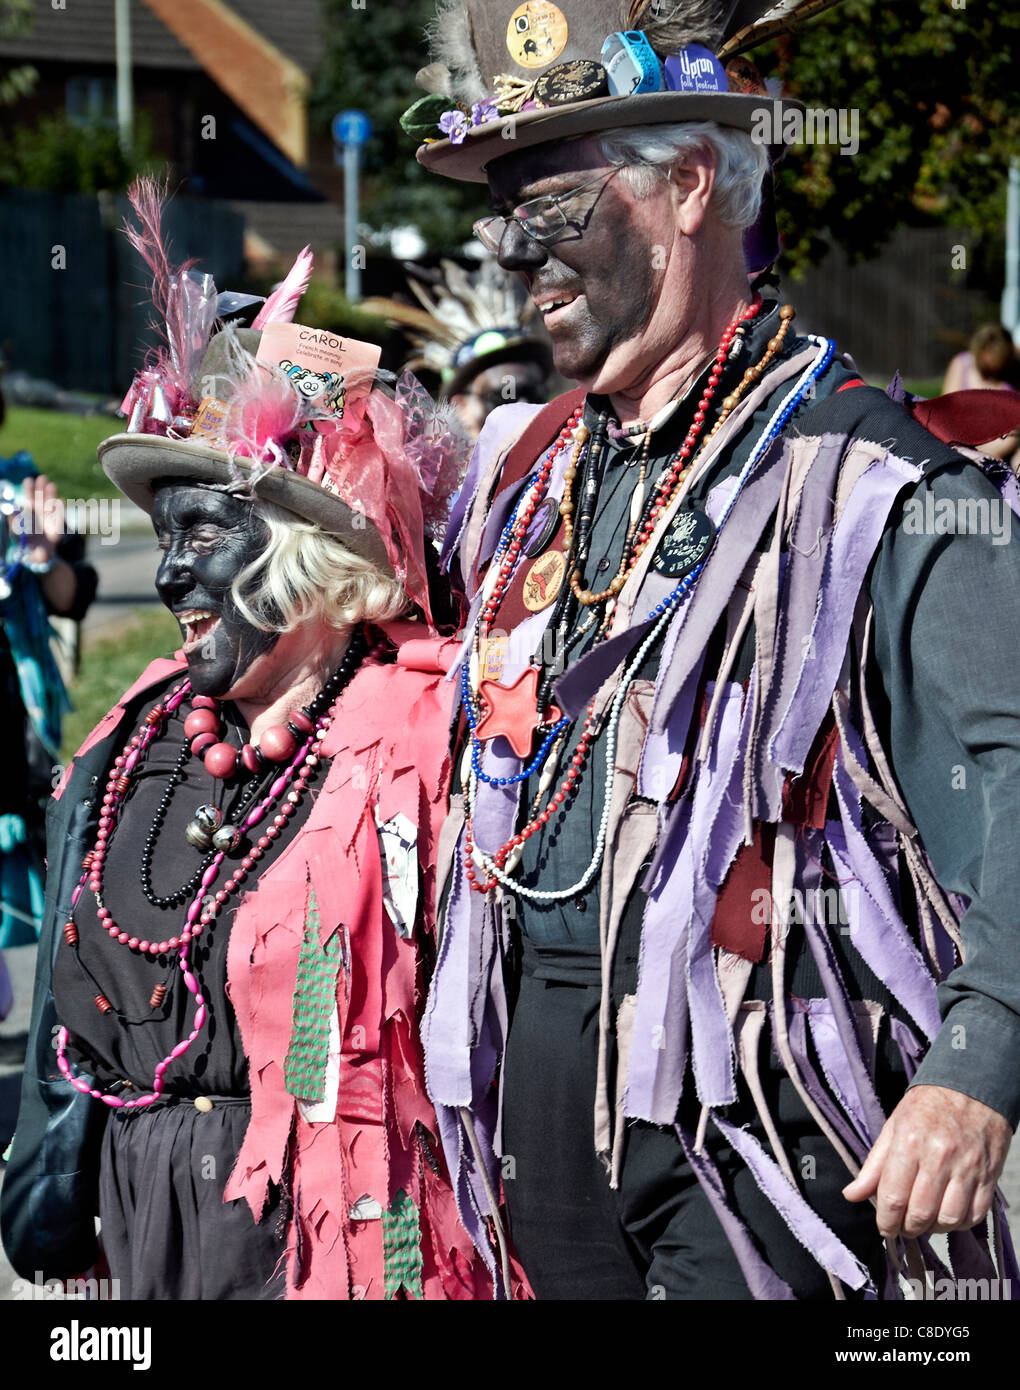 Les mimes traditionnel 'Black Face' couple folklorique. England UK Banque D'Images